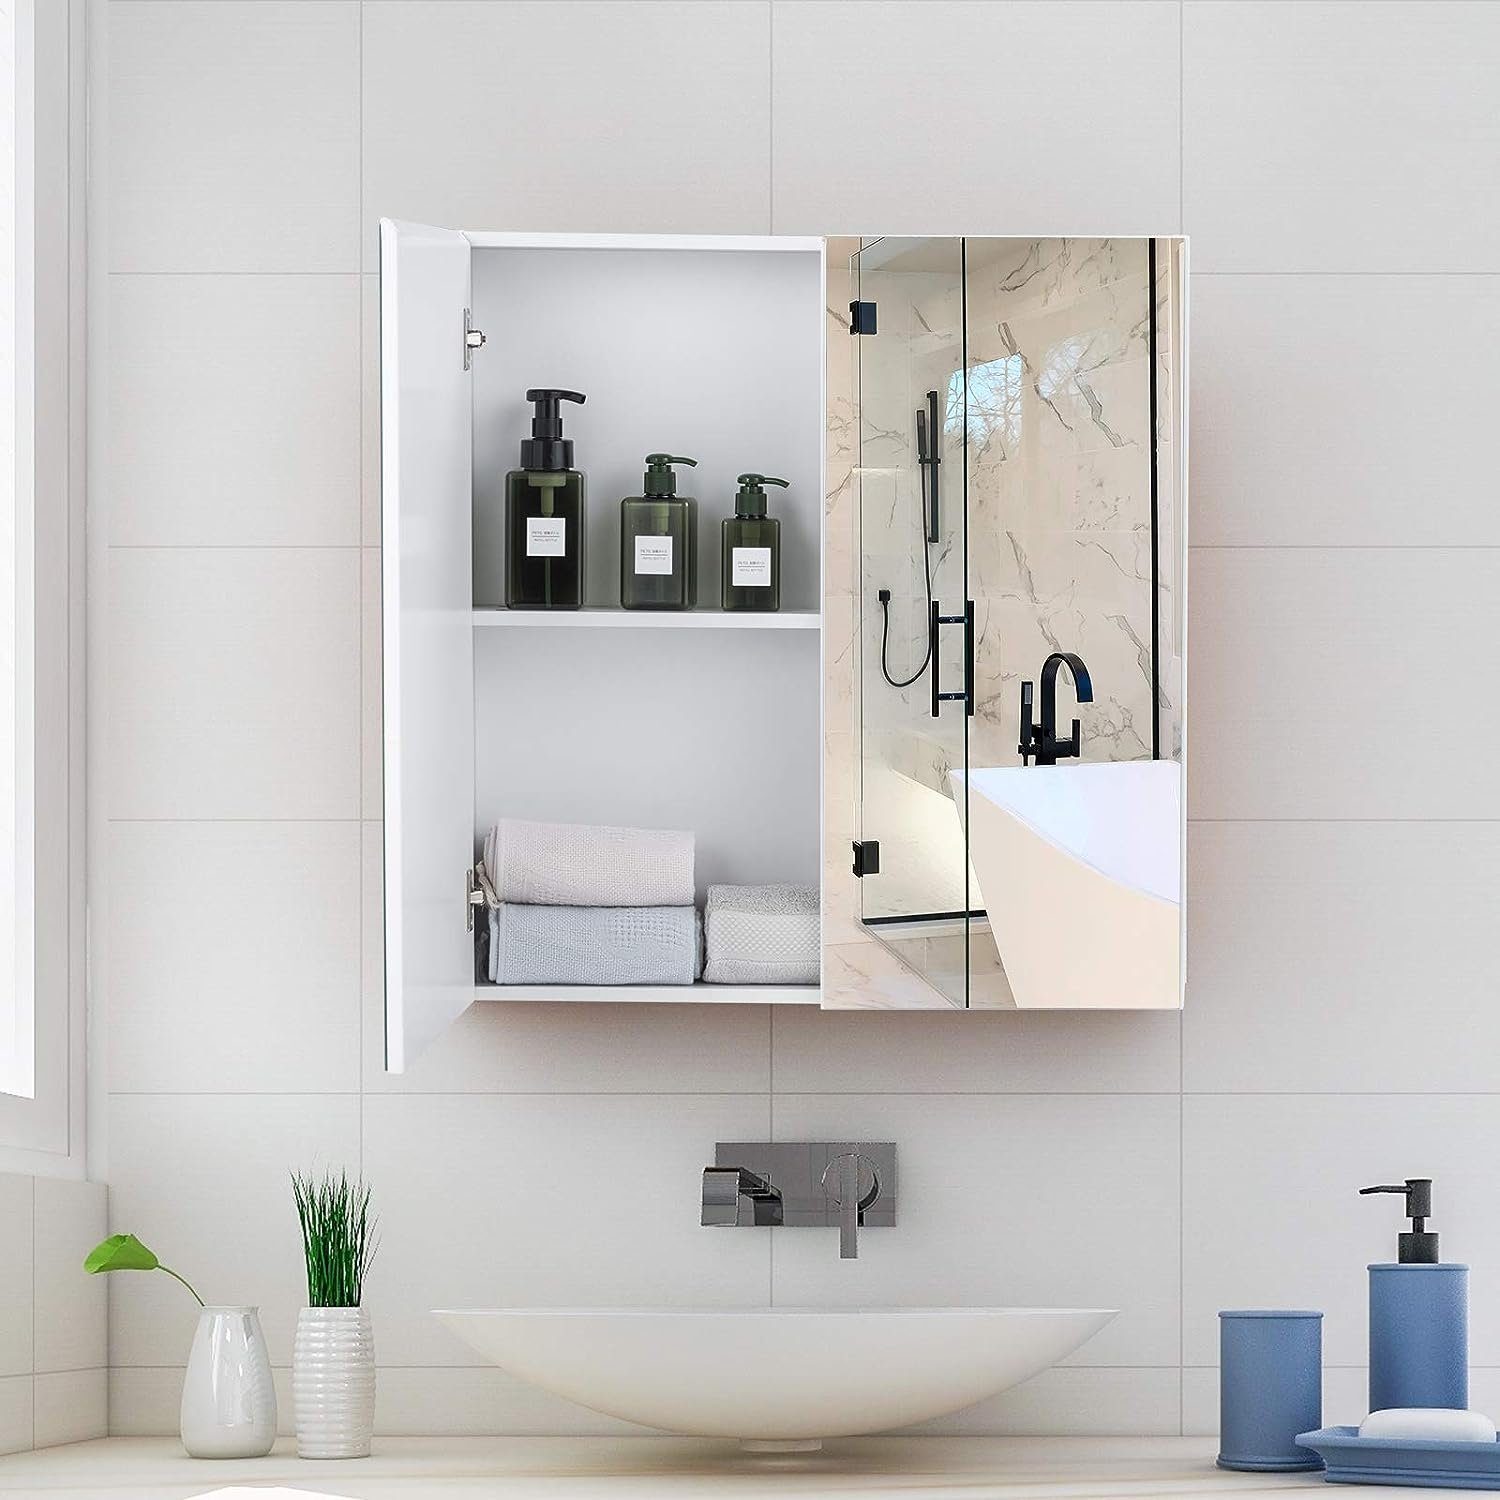 x 65 2 Badezimmerspiegelschrank 11,3 KOMFOTTEU mit cm Türen, 62 x Spiegelschrank